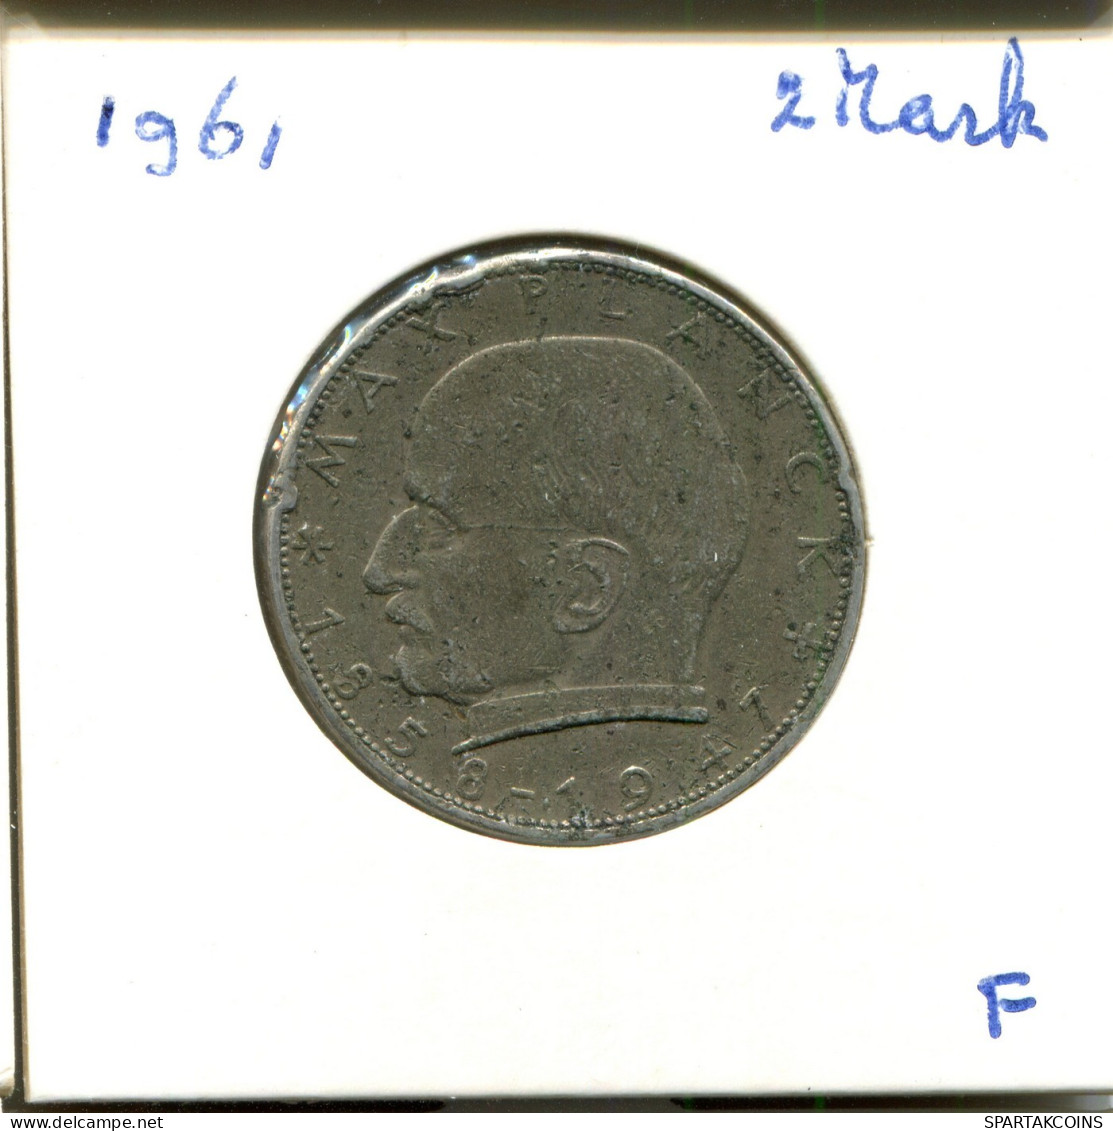 2 DM 1961 F M.Planck BRD ALEMANIA Moneda GERMANY #DA813.E.A - 2 Marcos